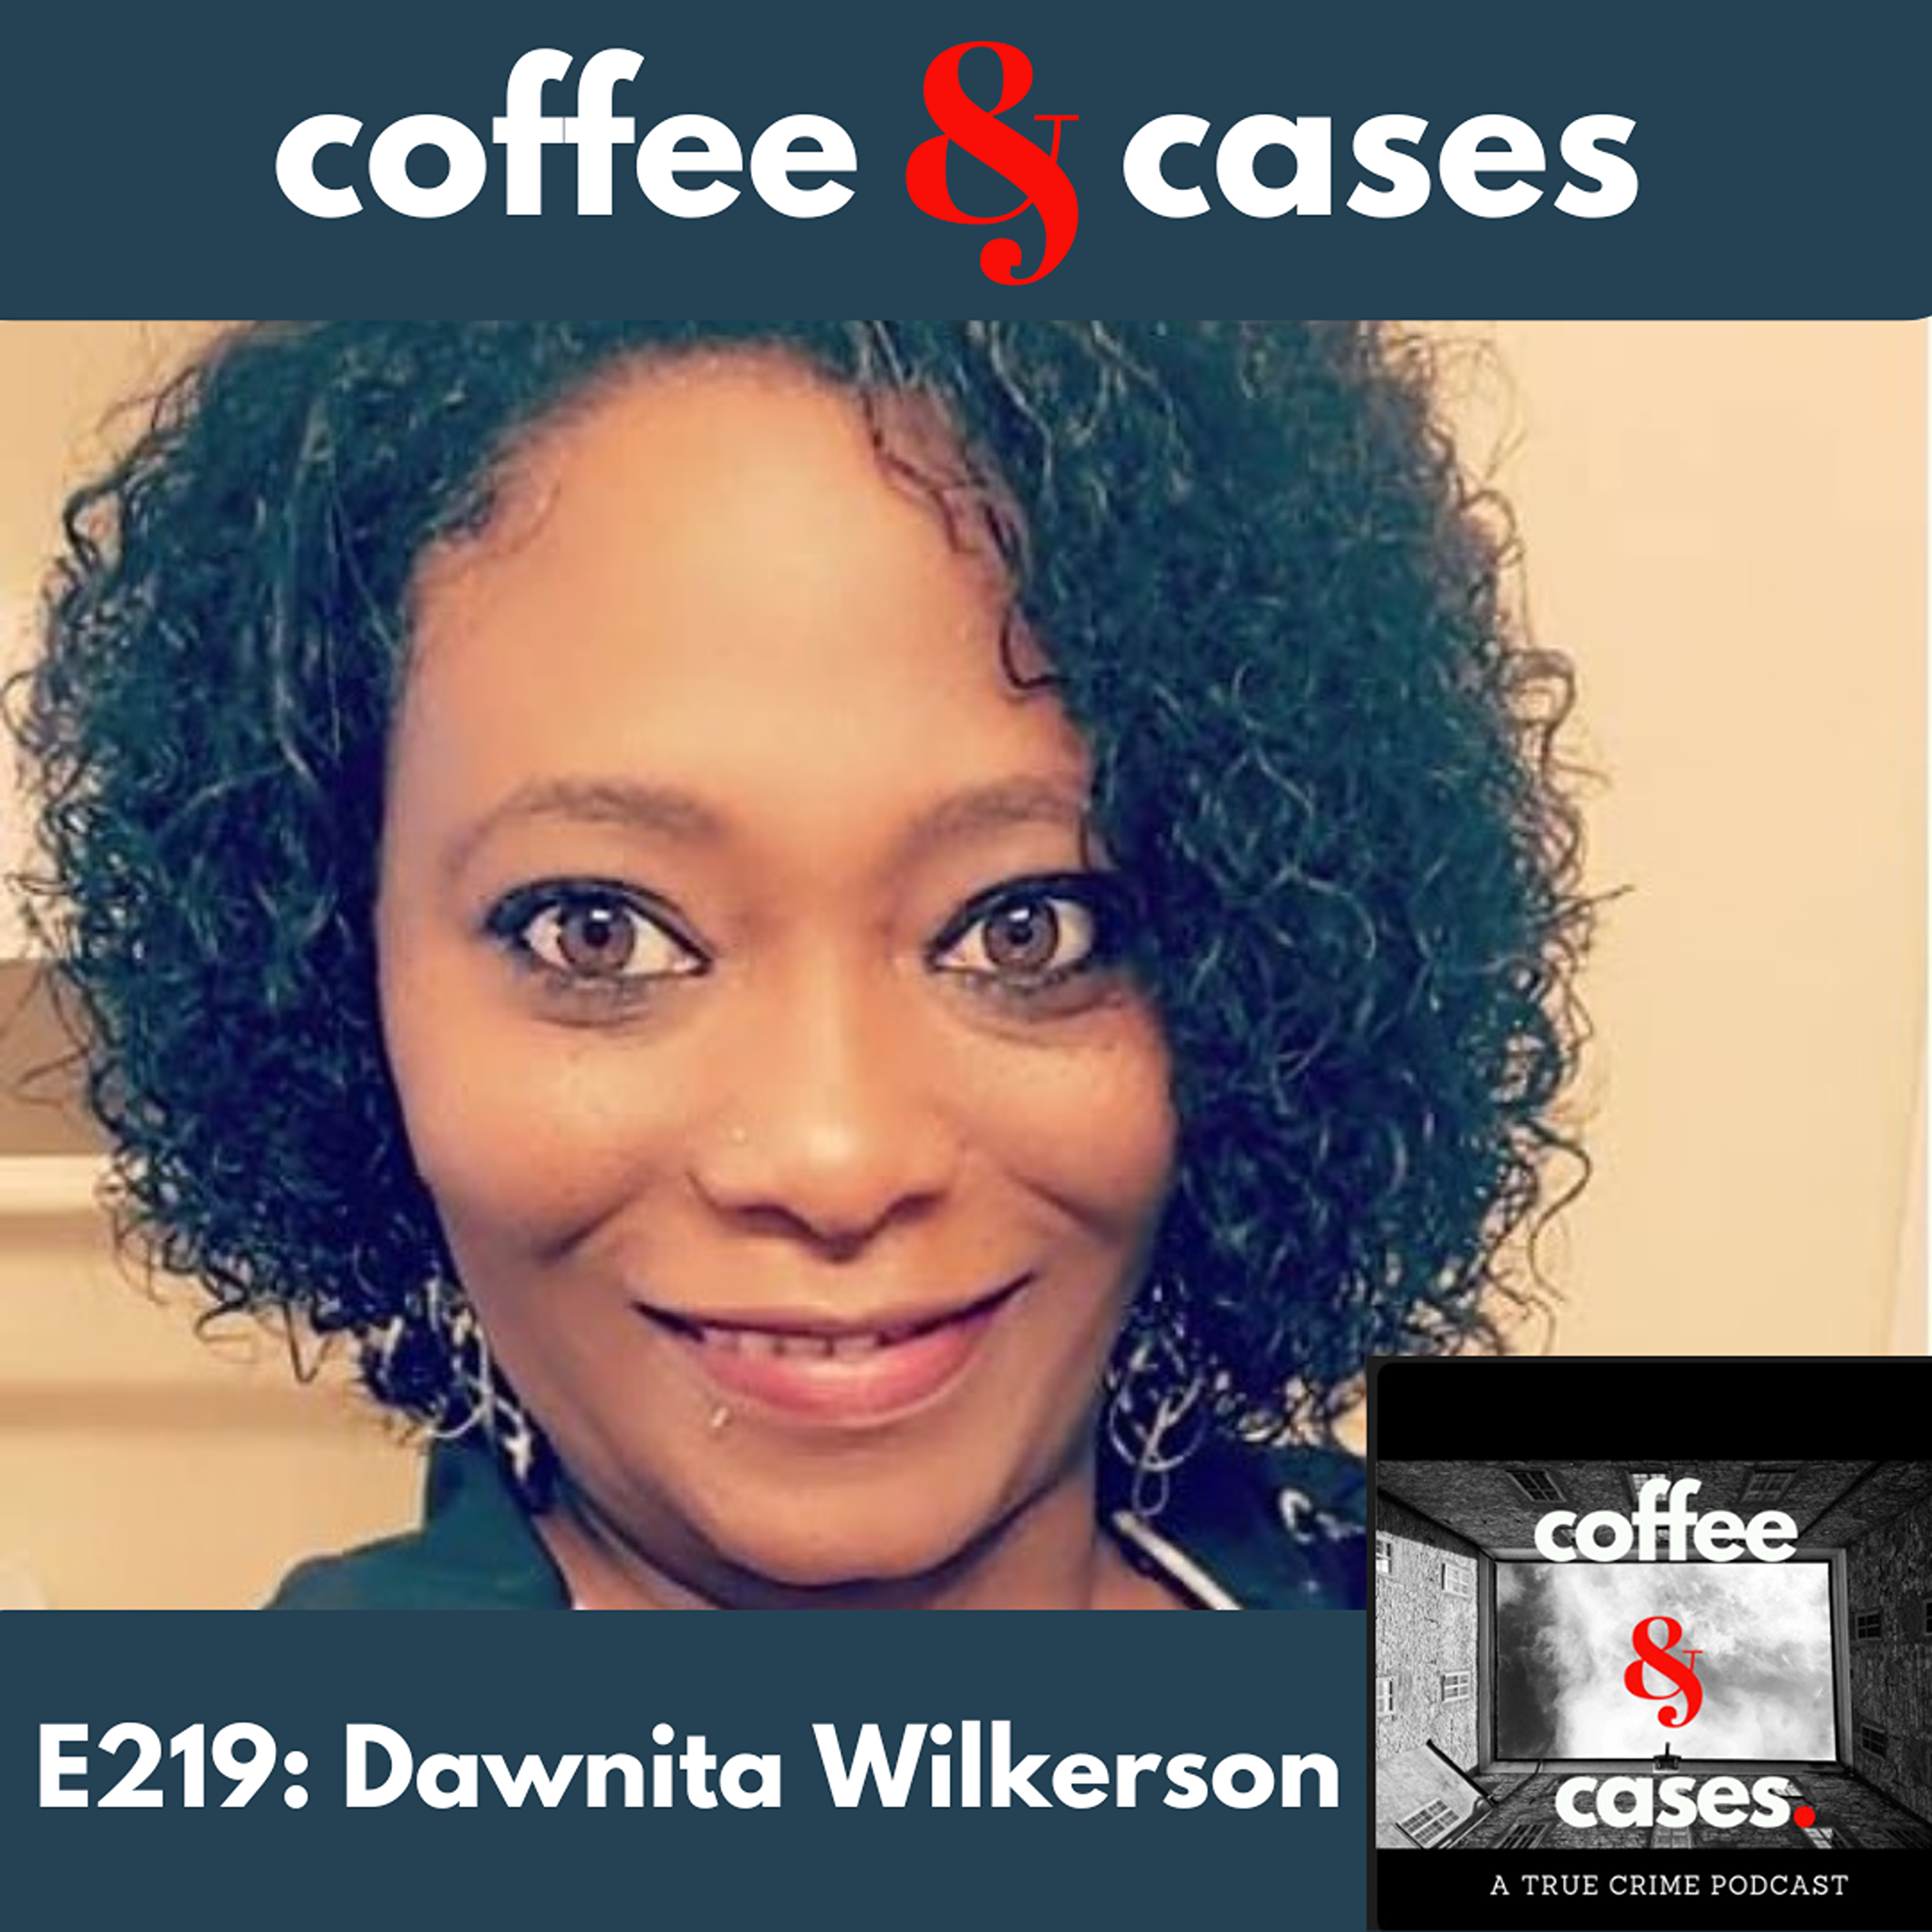 E219: Dawnita Wilkerson